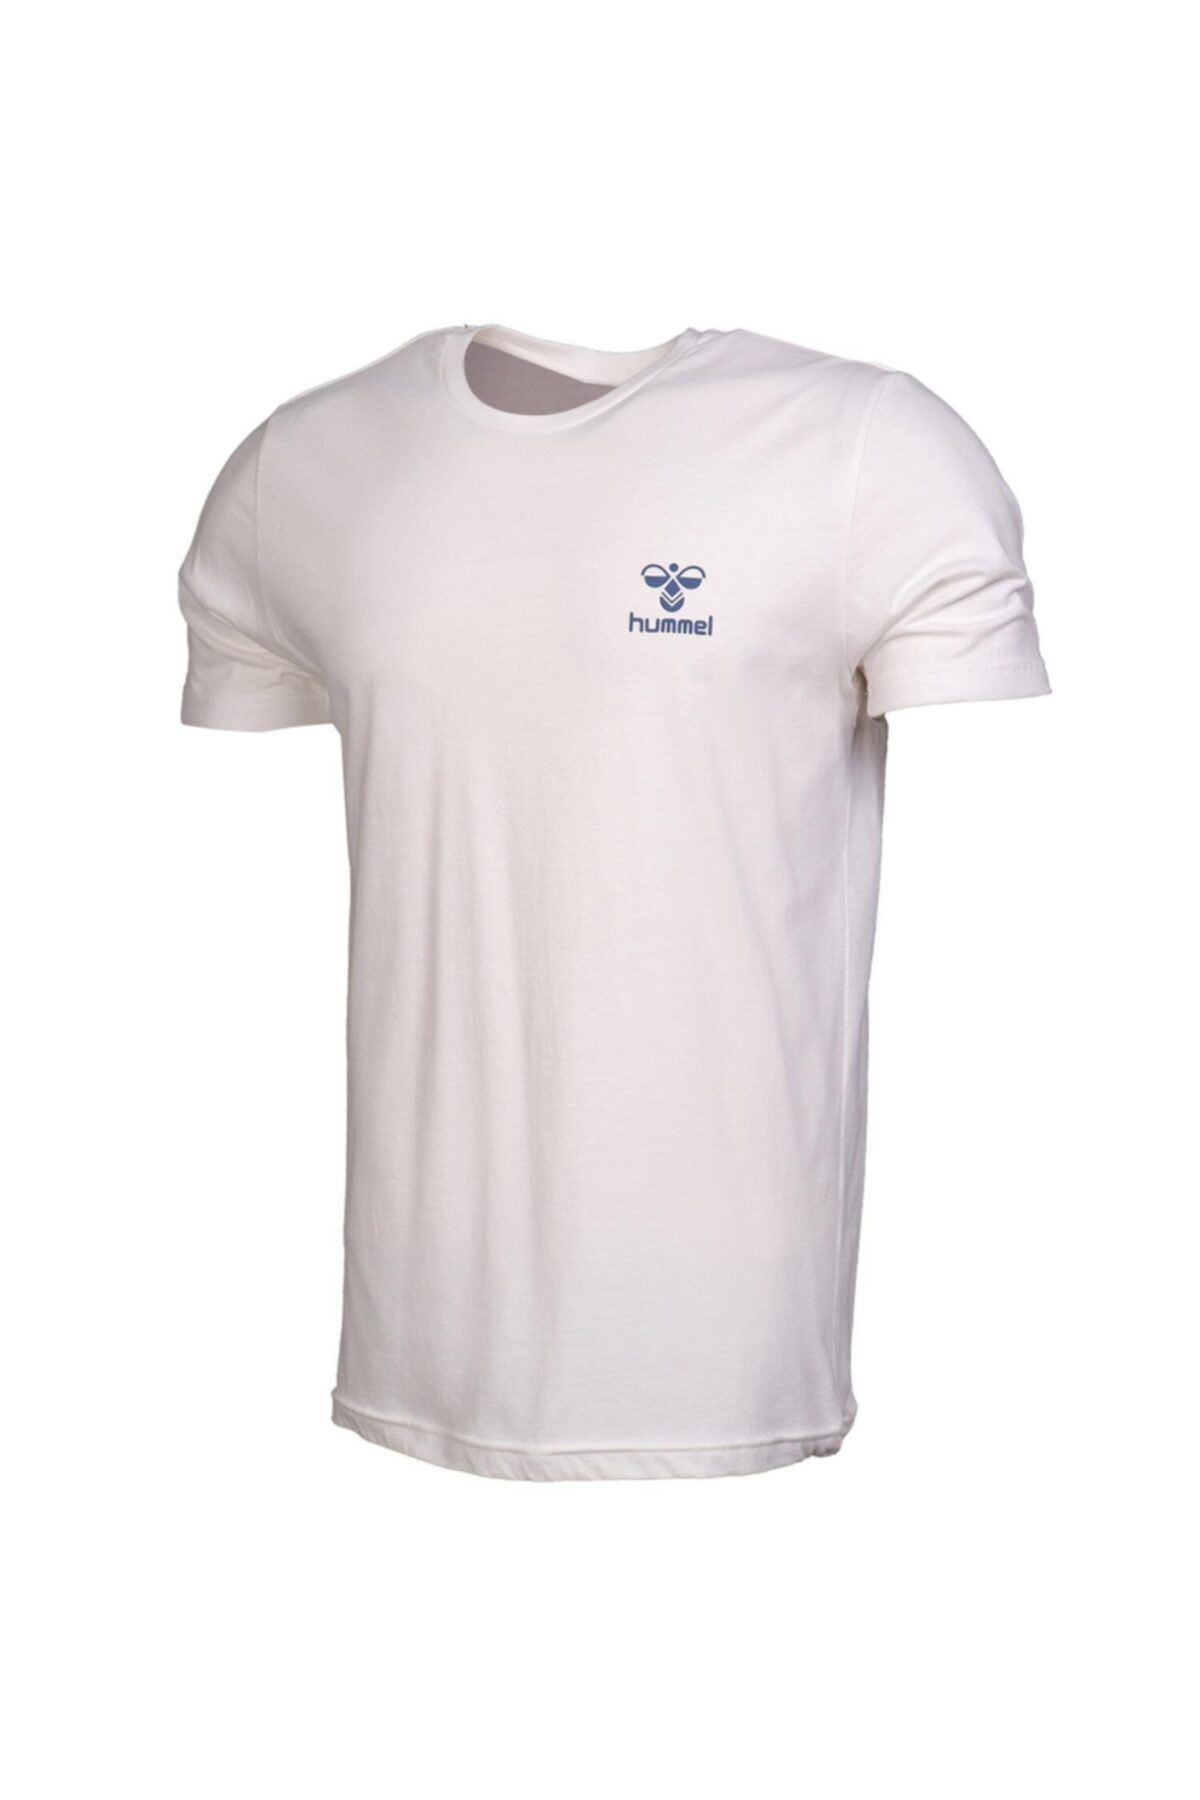 تی شرت پارجه ای قابل تنفس مردانه بژ هومل Hummel (برند دانمارک)